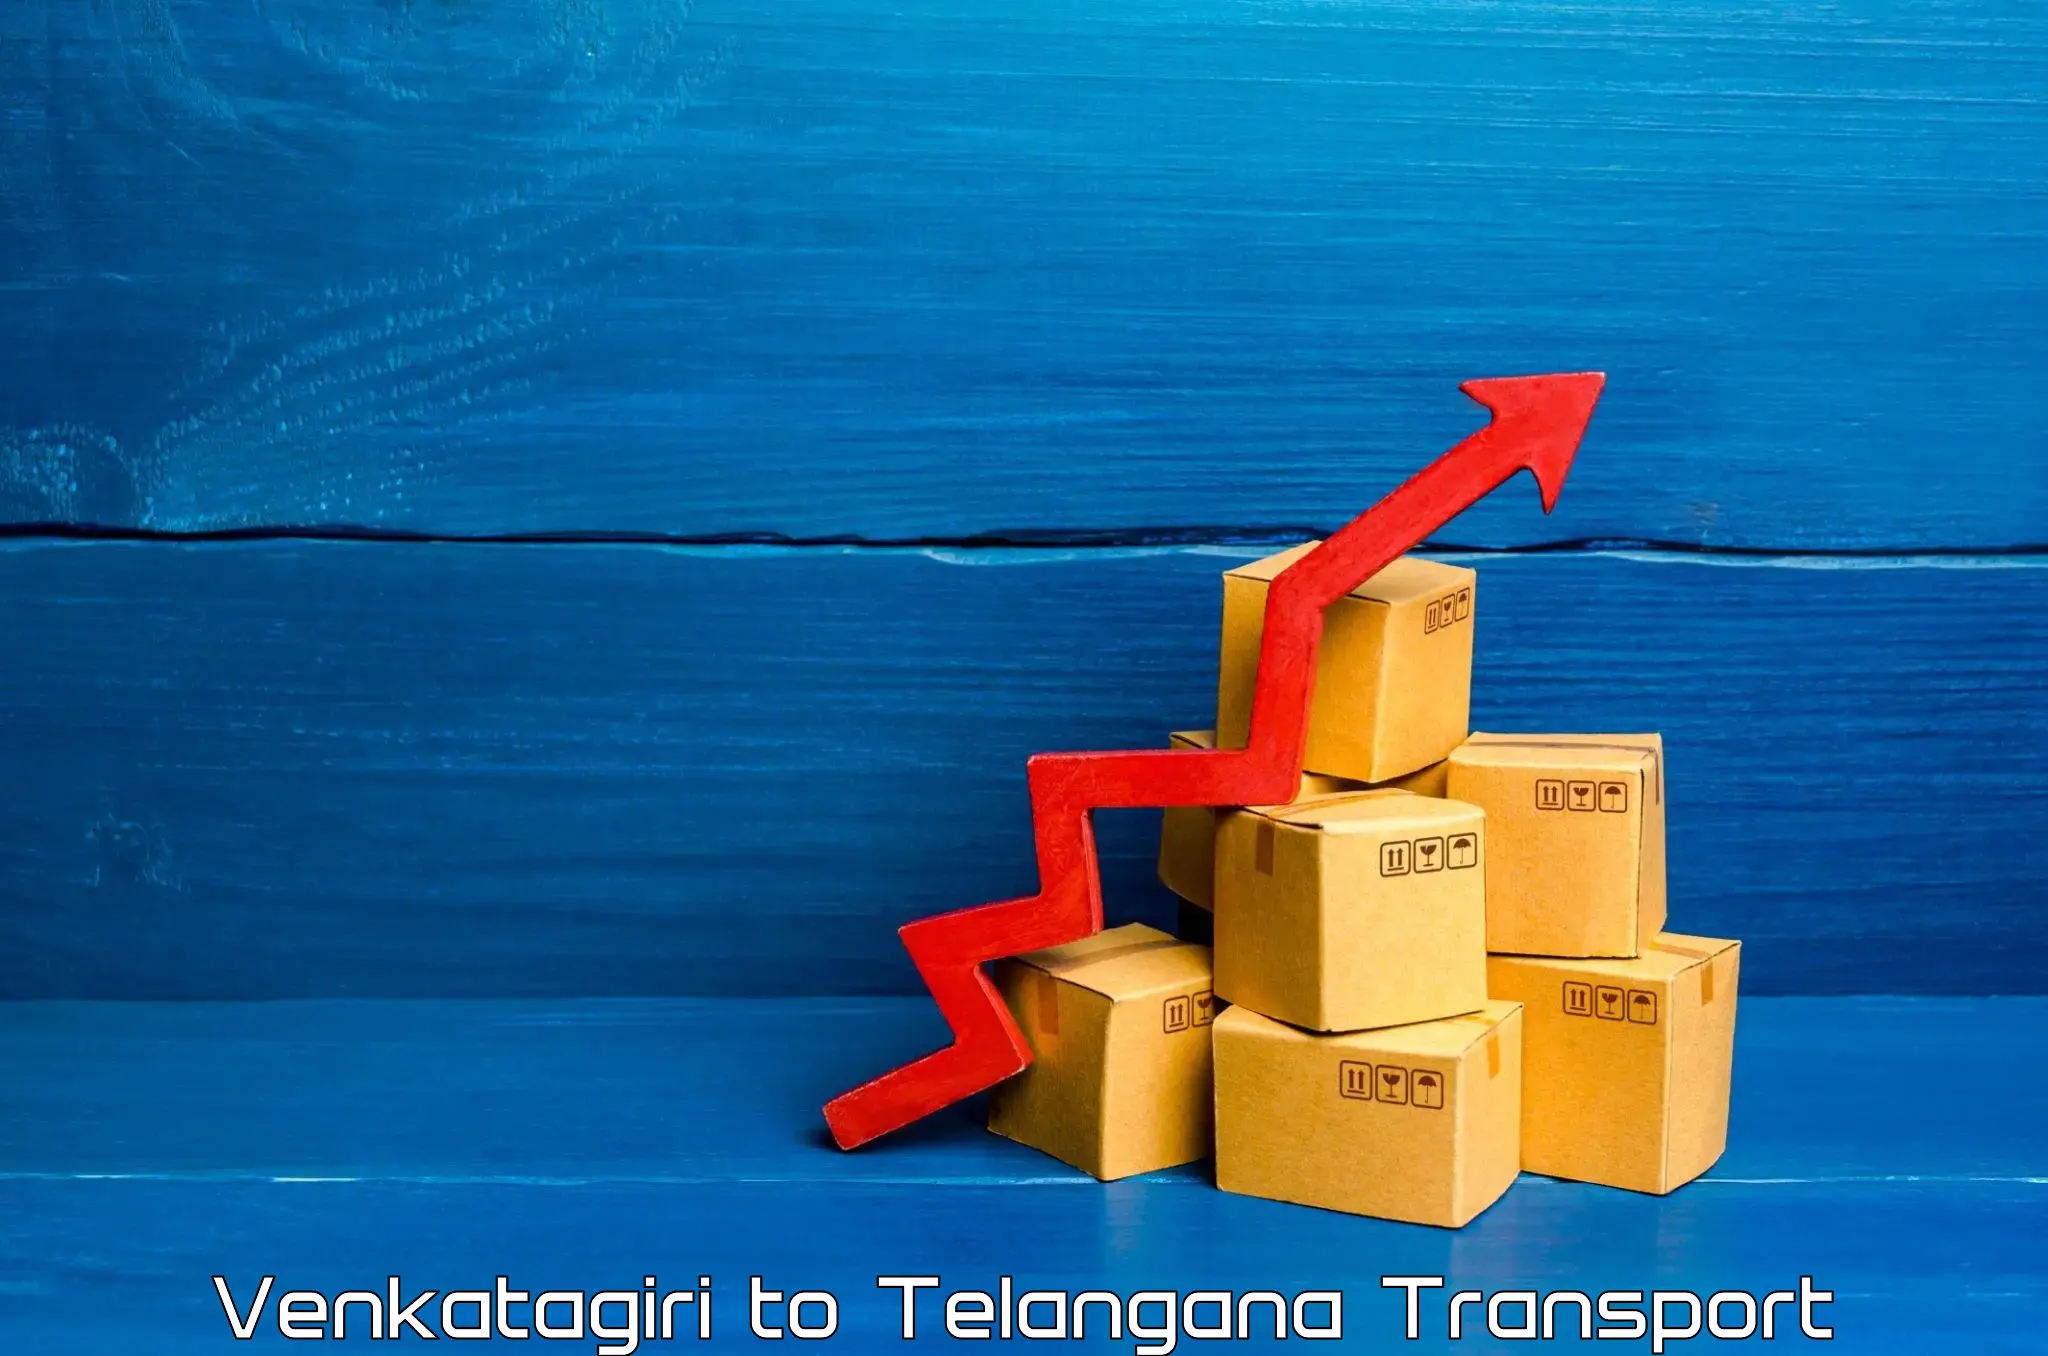 Online transport service Venkatagiri to Gangadhara